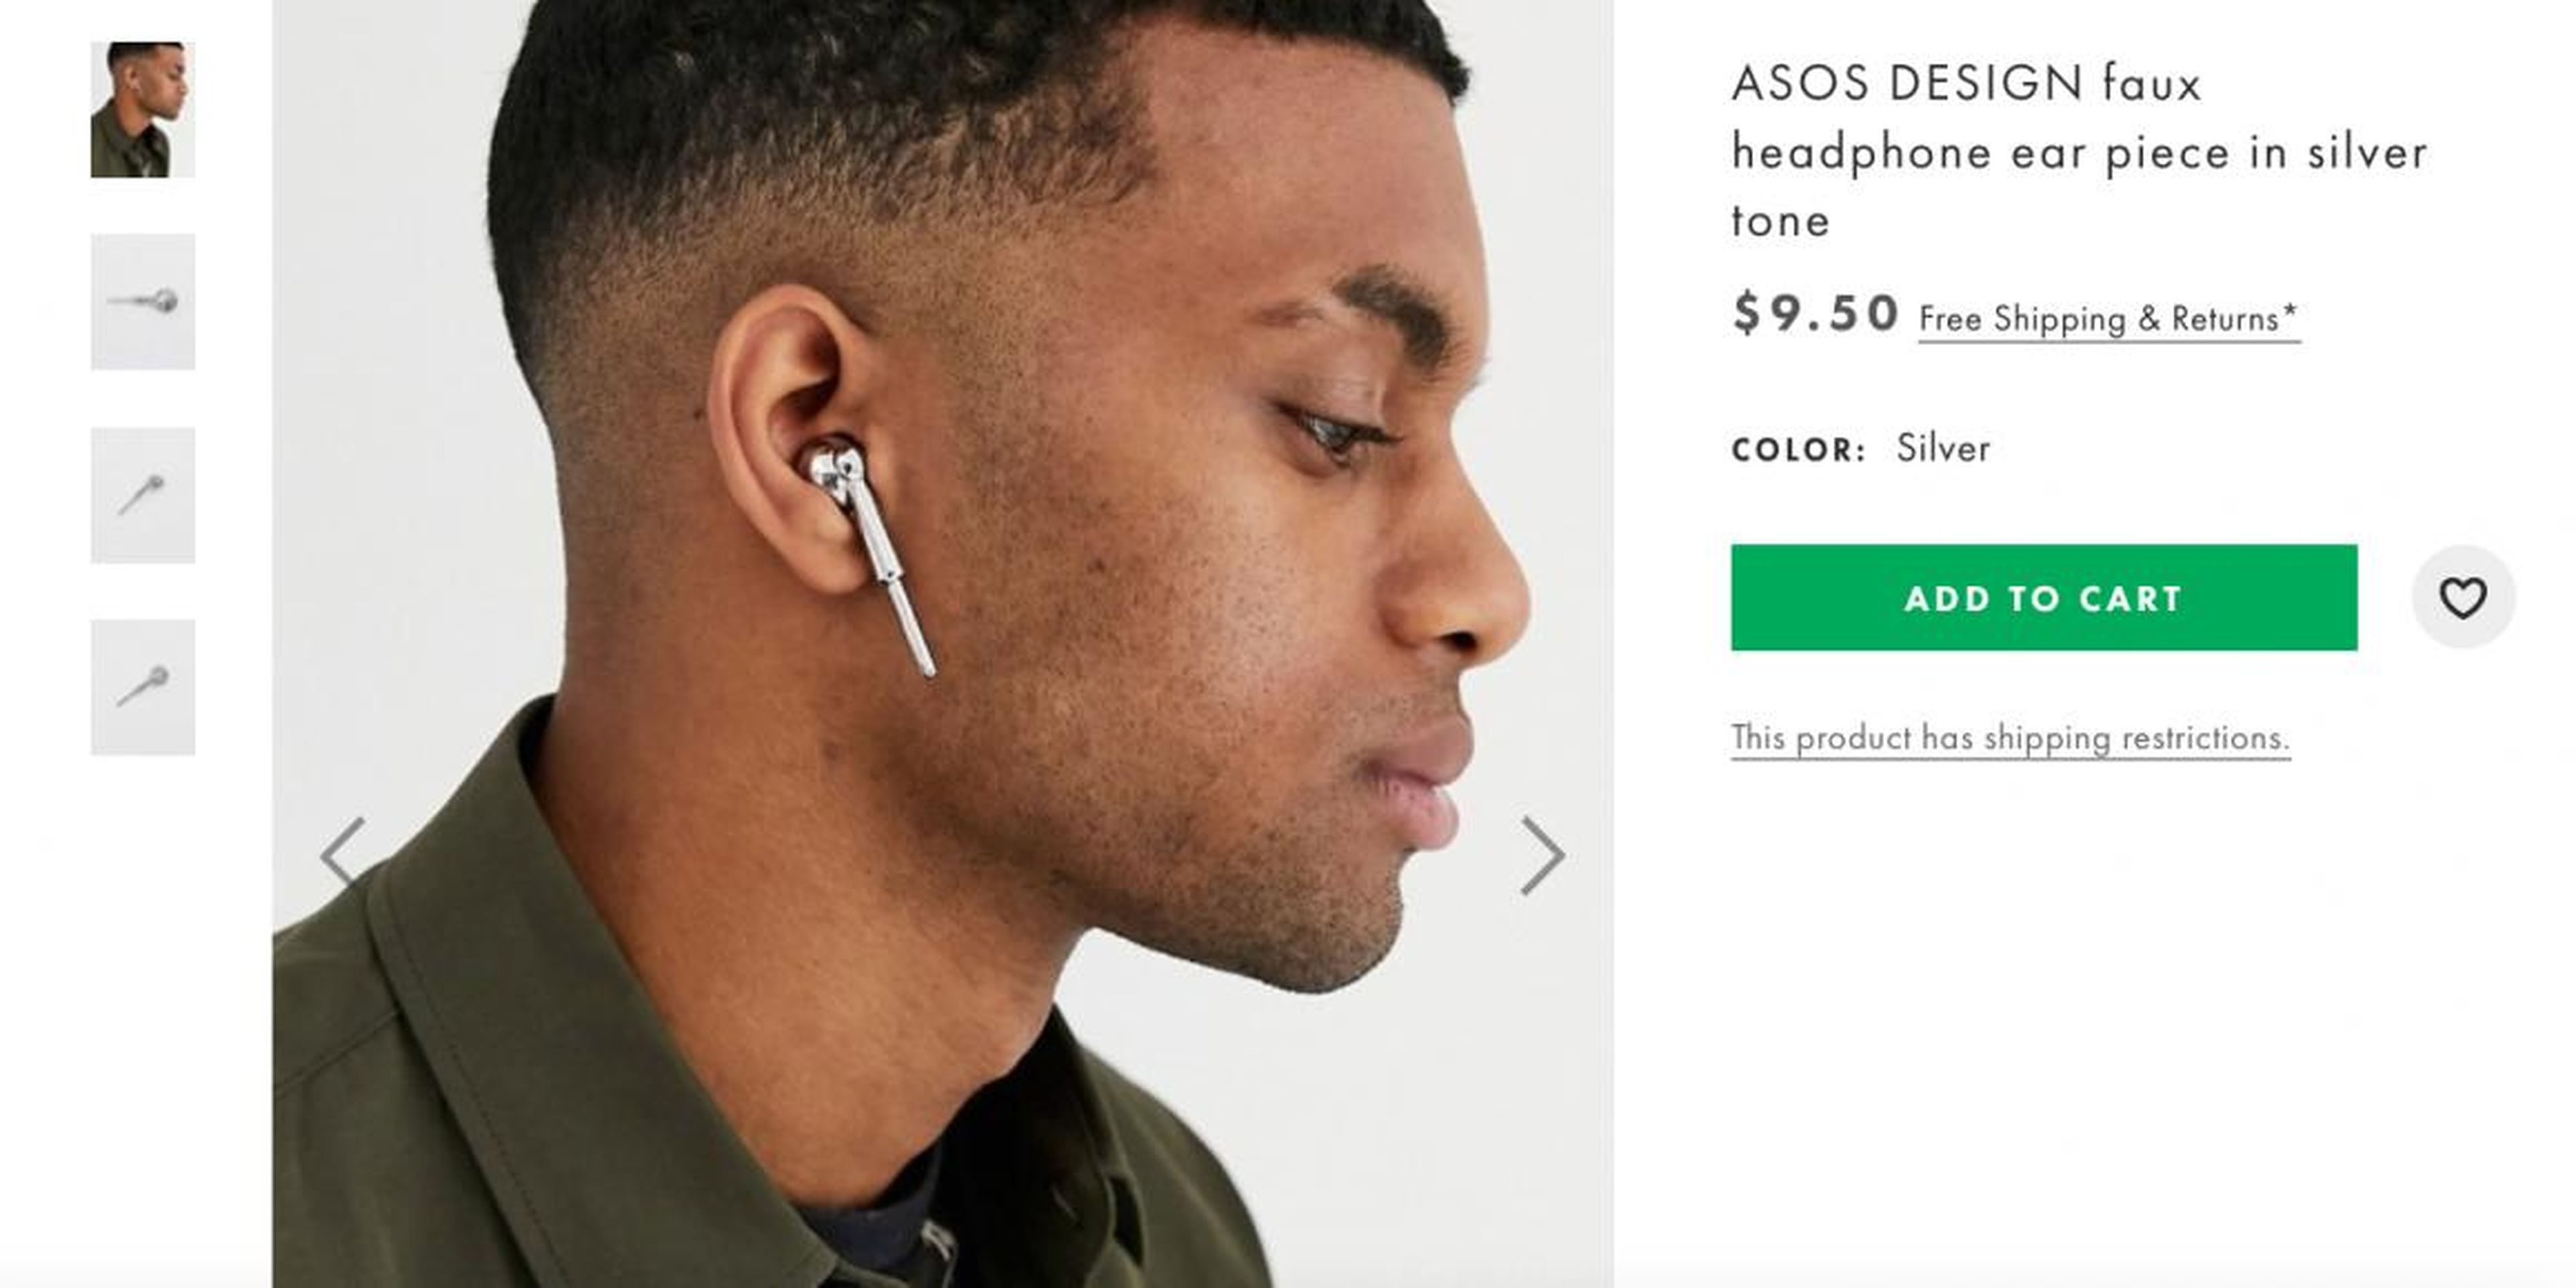 ASOS ahora está vendiendo un "auricular de imitación en tono plateado" que no funciona.